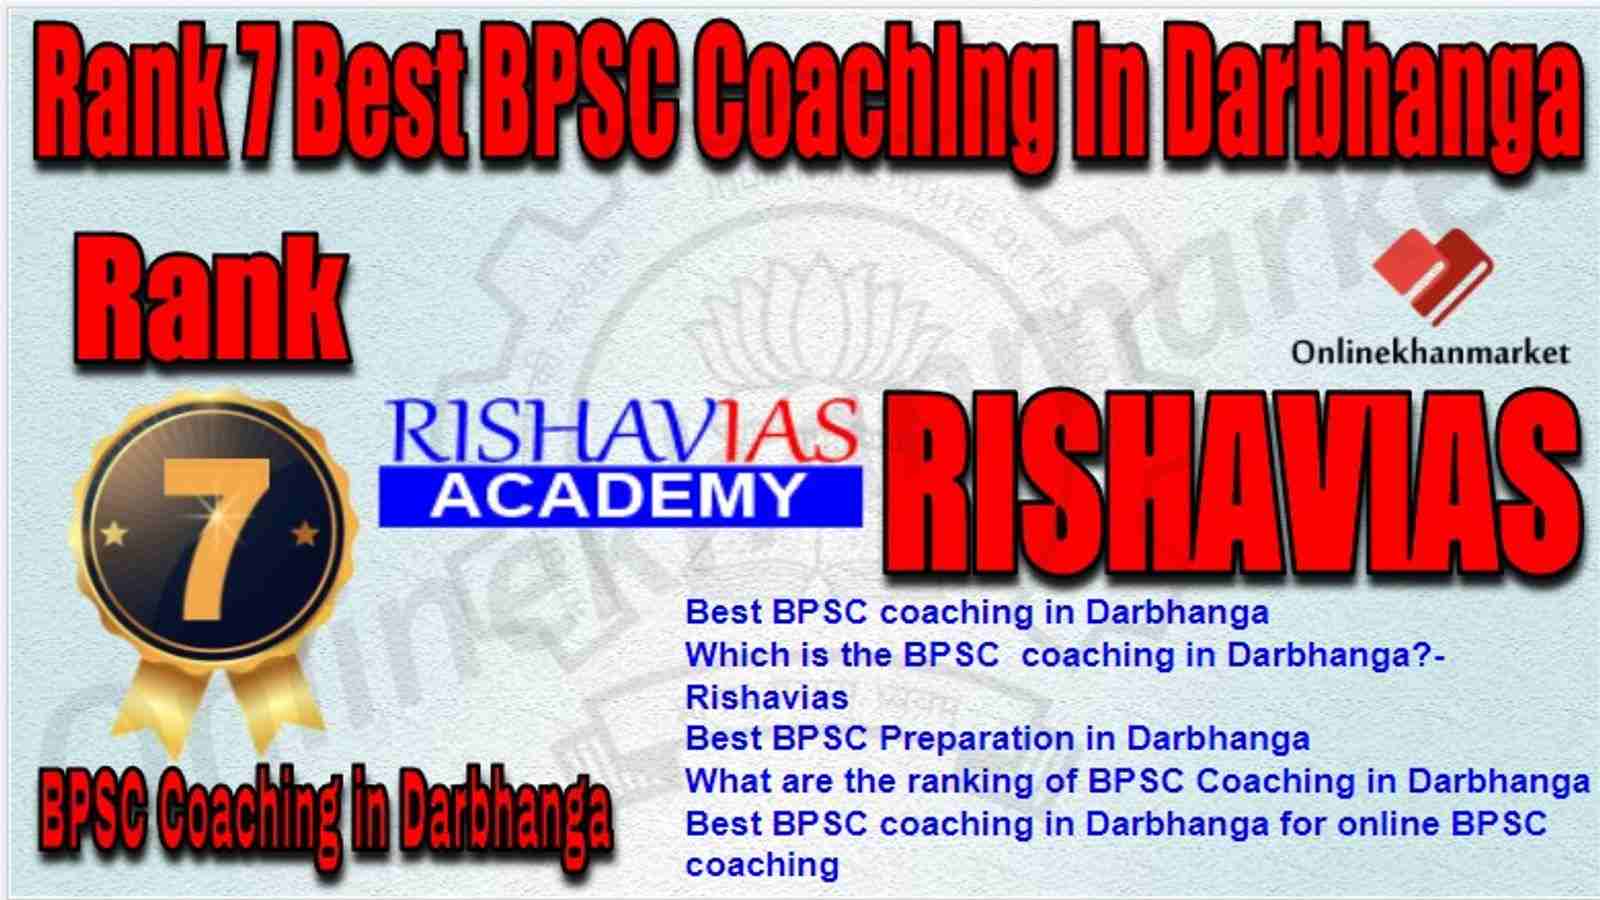 Rank 7 Best BPSC Coaching in darbhanga